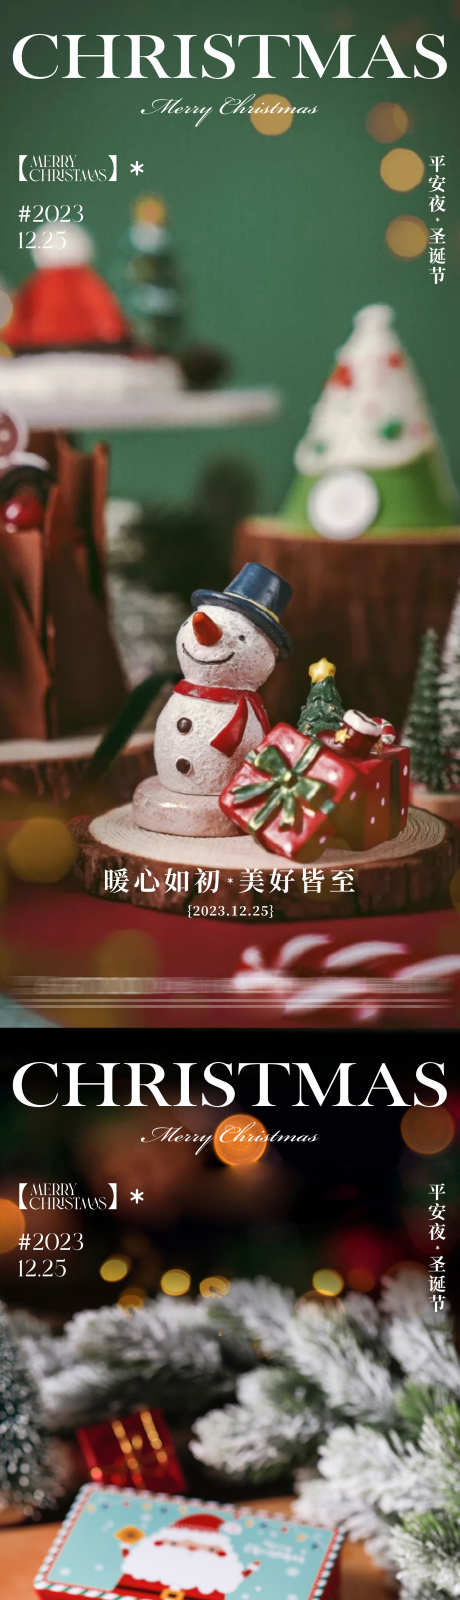 地产圣诞节海报_源文件下载_CDR格式_2149X9605像素-排版,海报,地产,氛围感,圣诞树,雪人,圣诞节-作品编号:2023122011567981-源文件库-ywjfx.cn